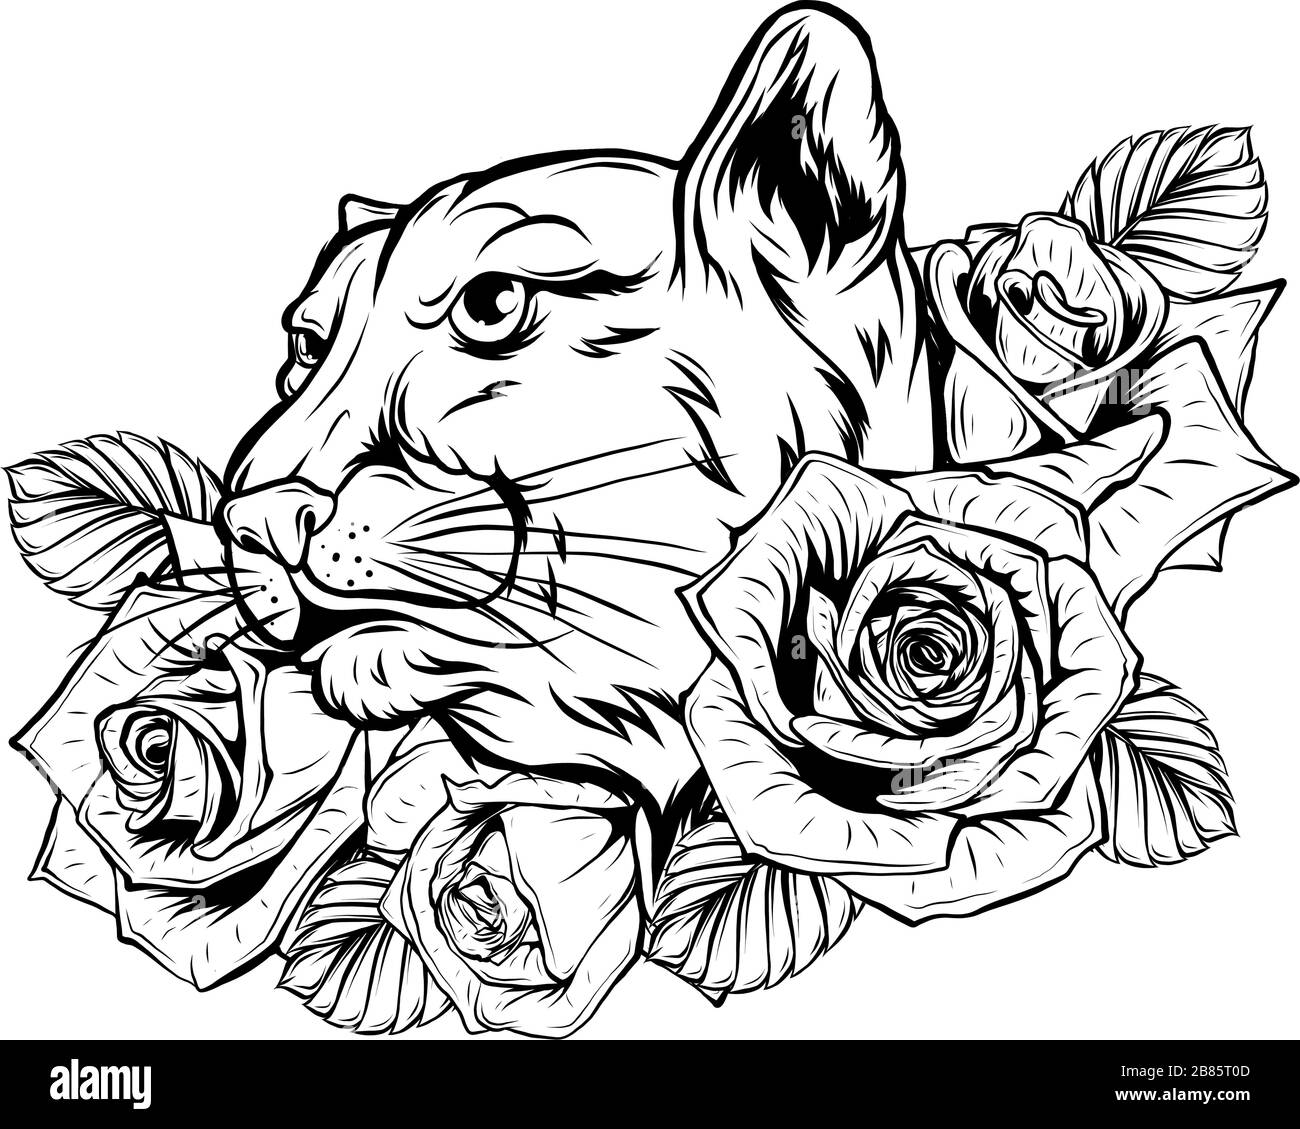 Testa animale - Jaguar - illustrazione dell'icona del logo Vector Illustrazione Vettoriale